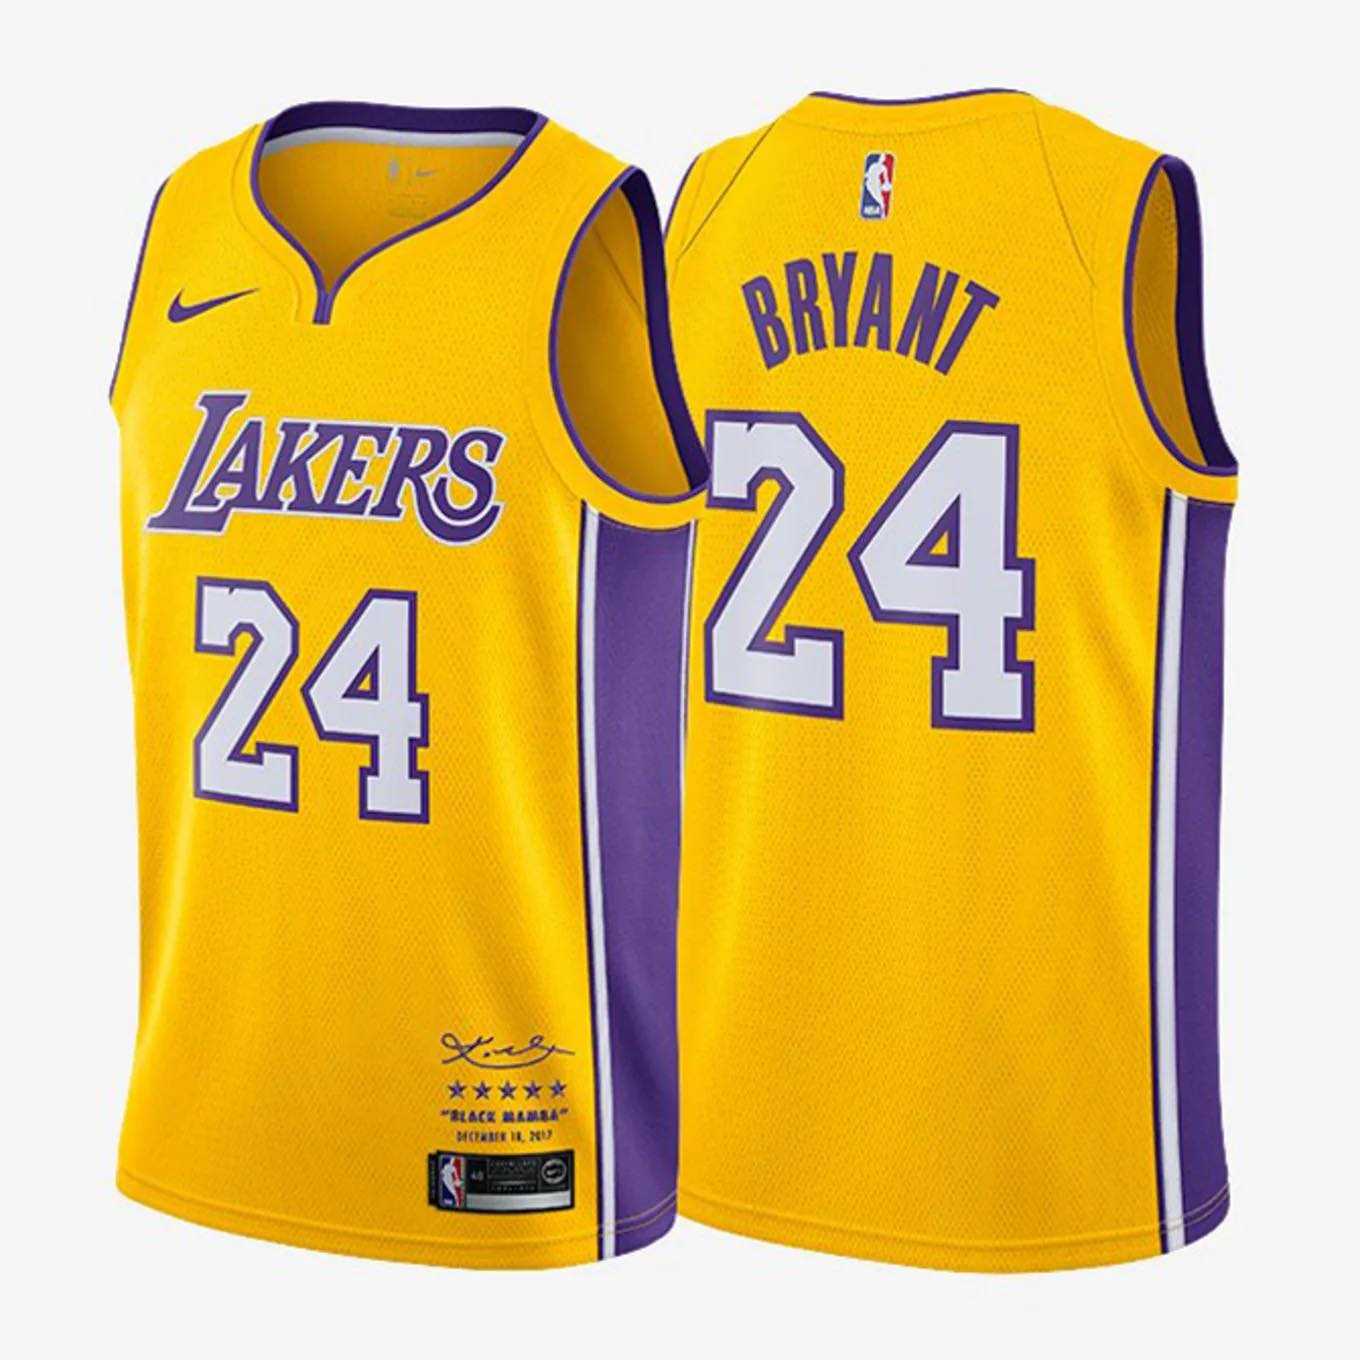 kobe bryant jersey-Kobe Bryant 24 Yellow Lakers Jersey-DaPrintFactory